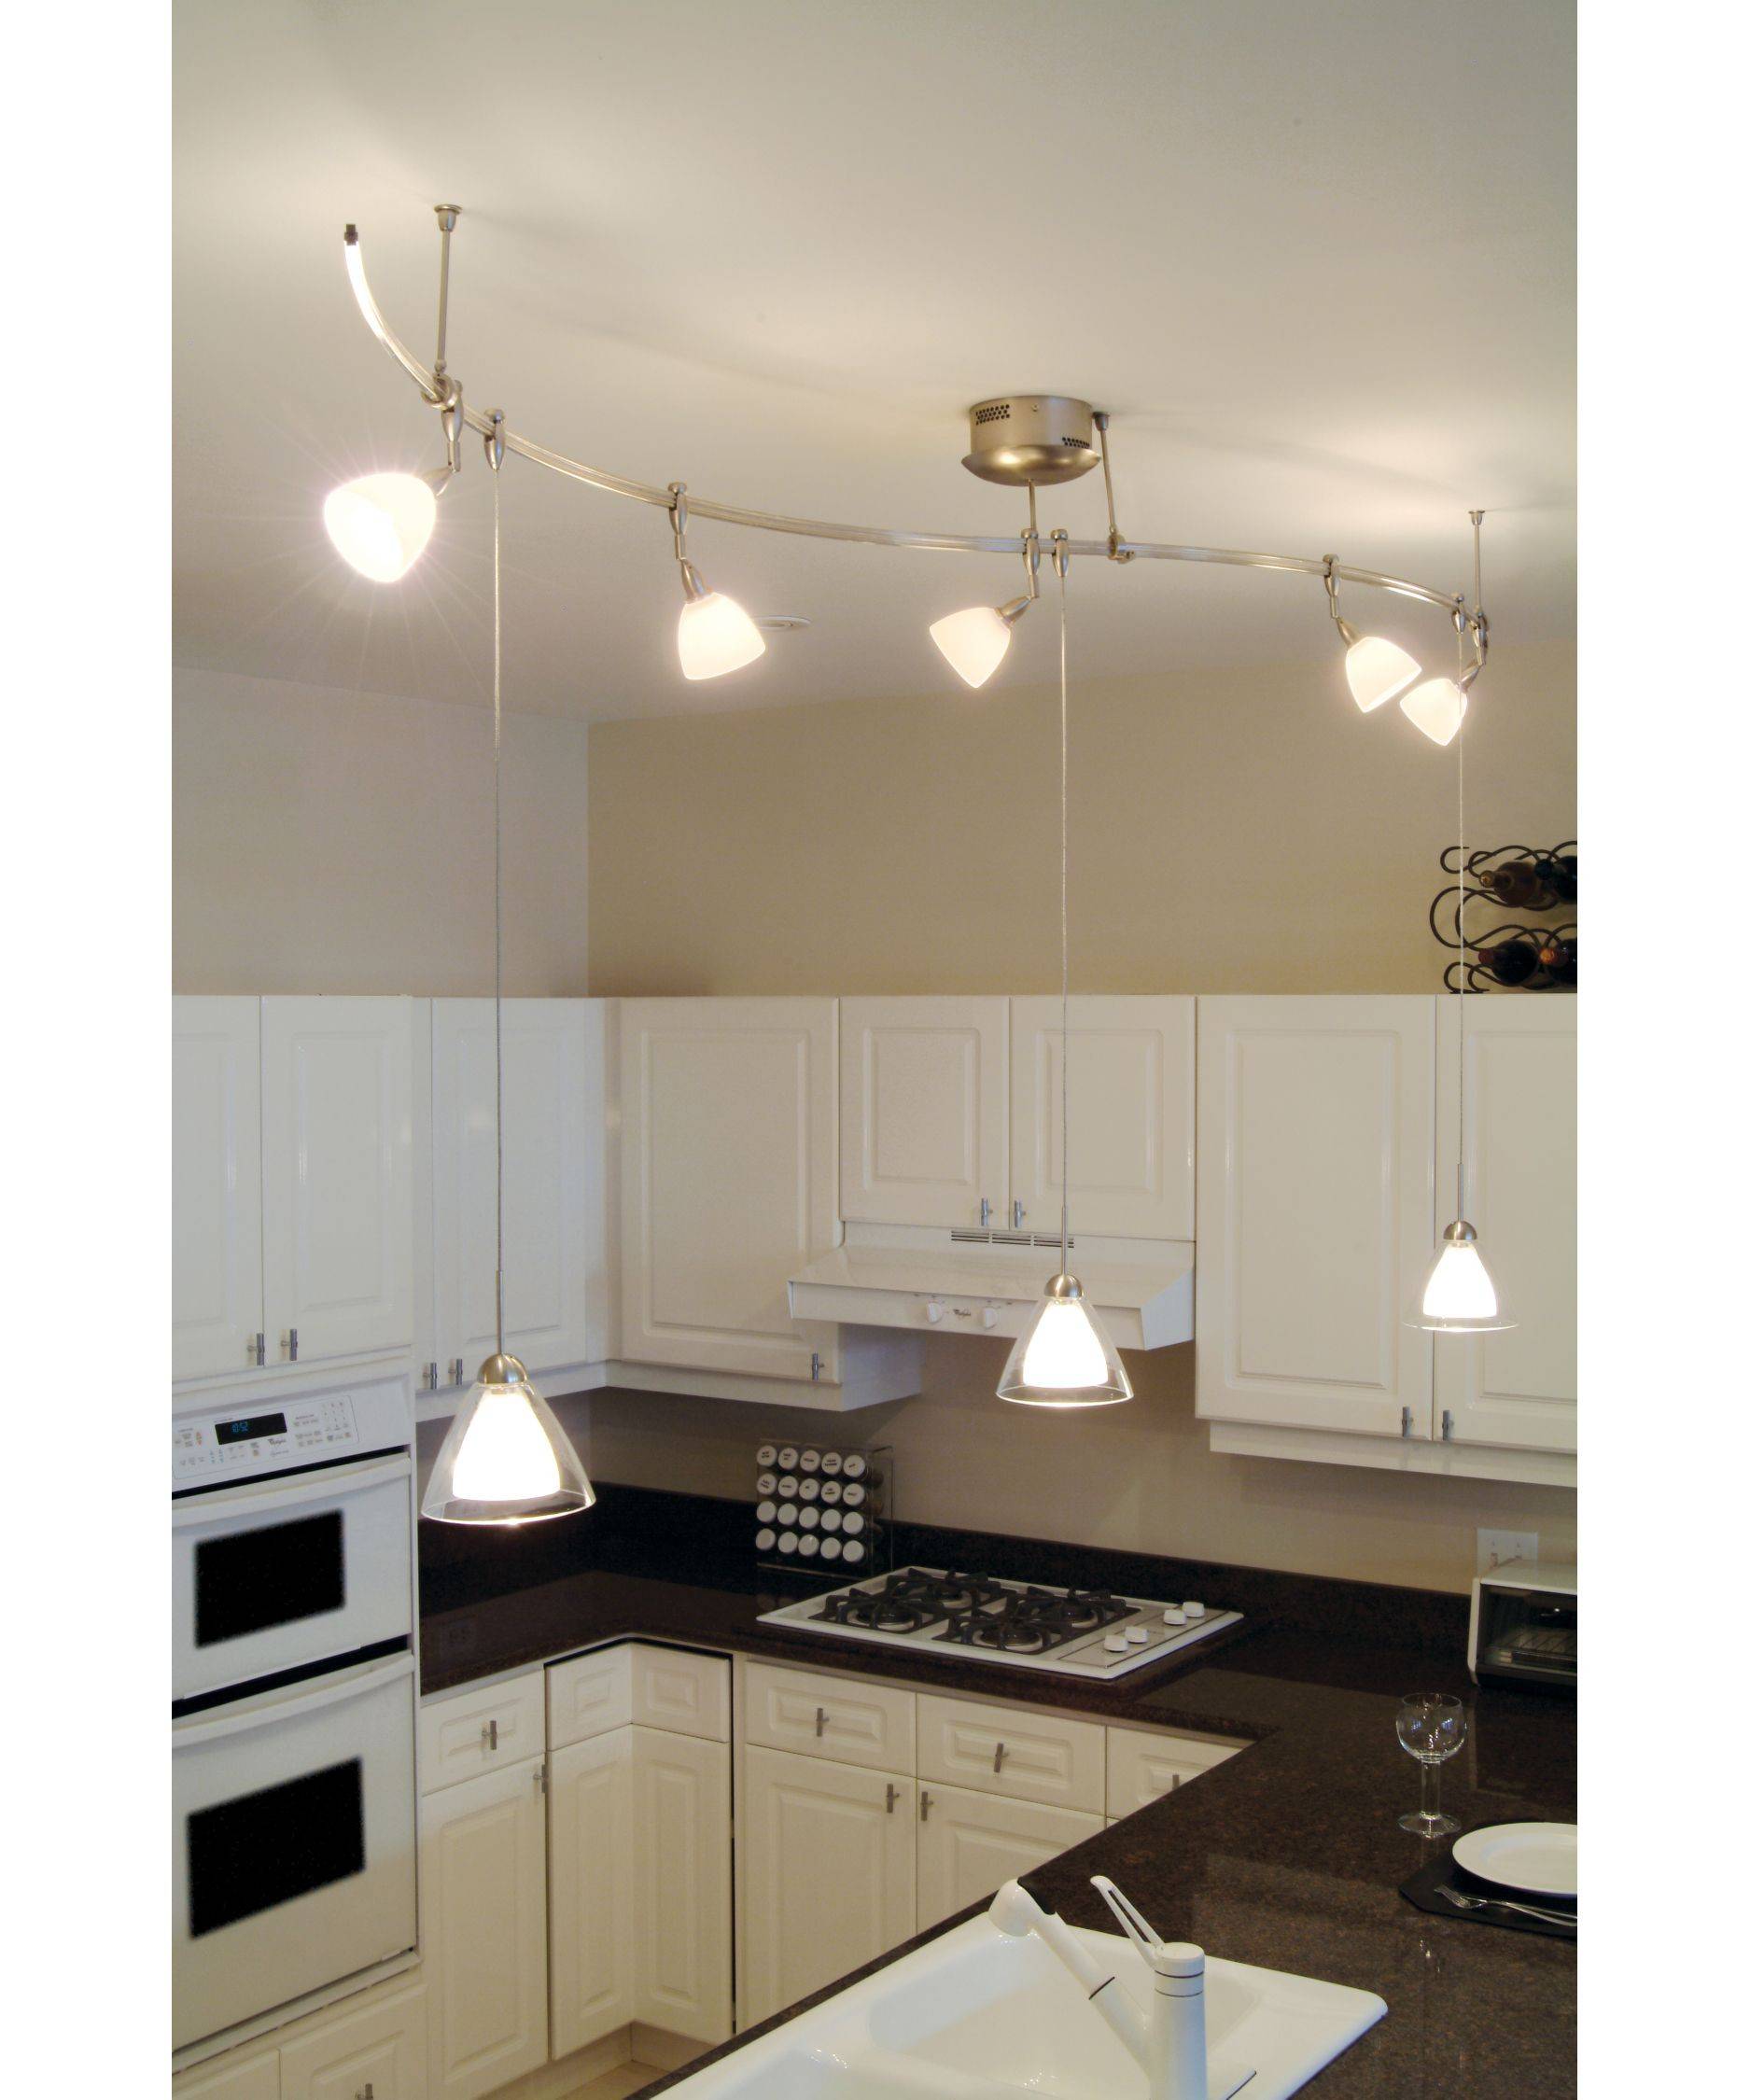 Дизайн светильников на натяжном потолке на кухне фото